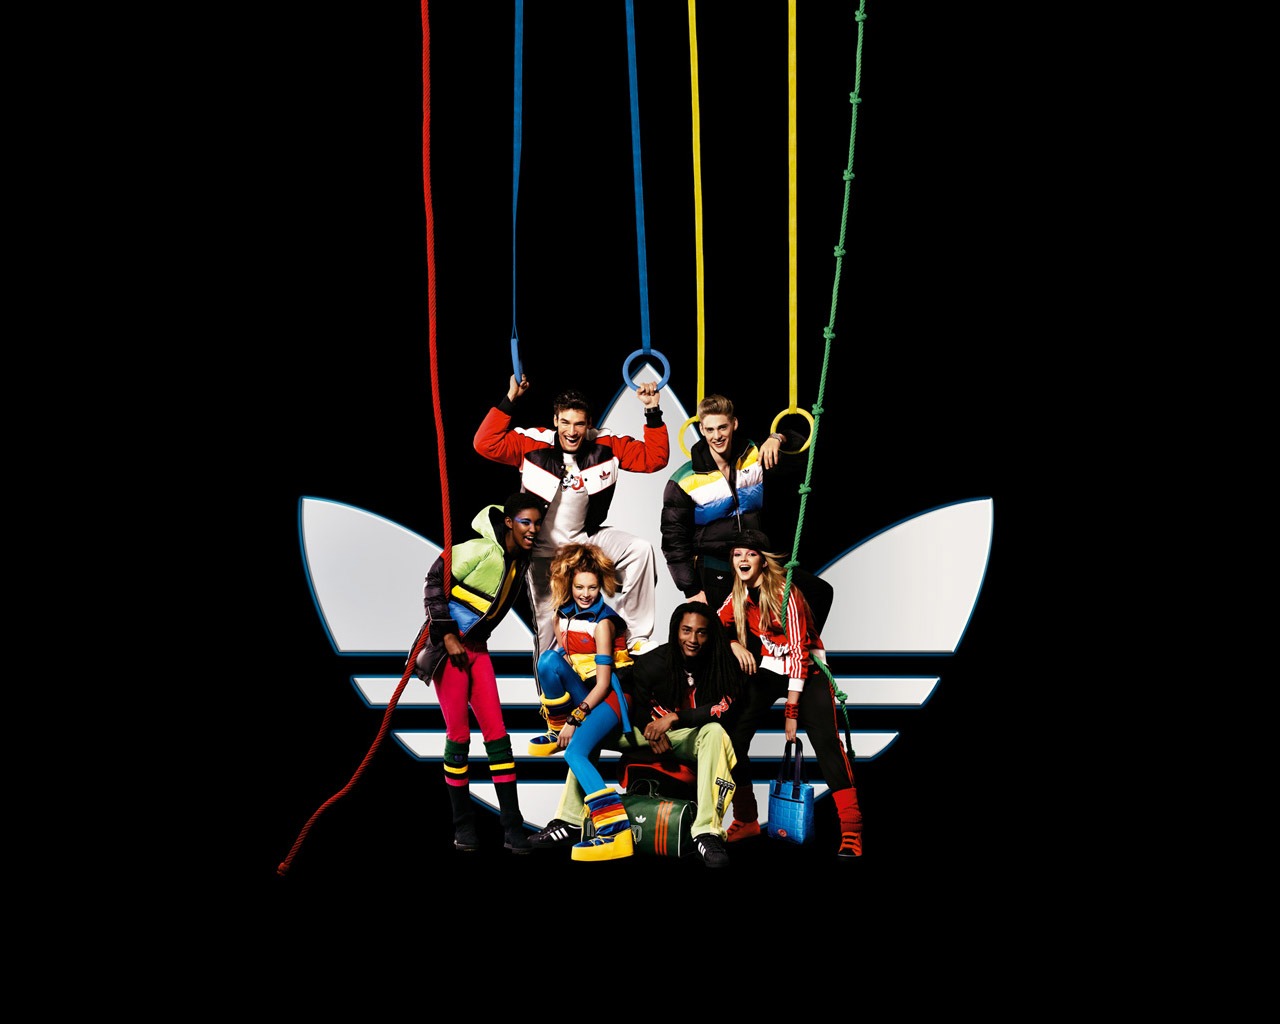 Fond d'écran de la publicité Adidas #1 - 1280x1024